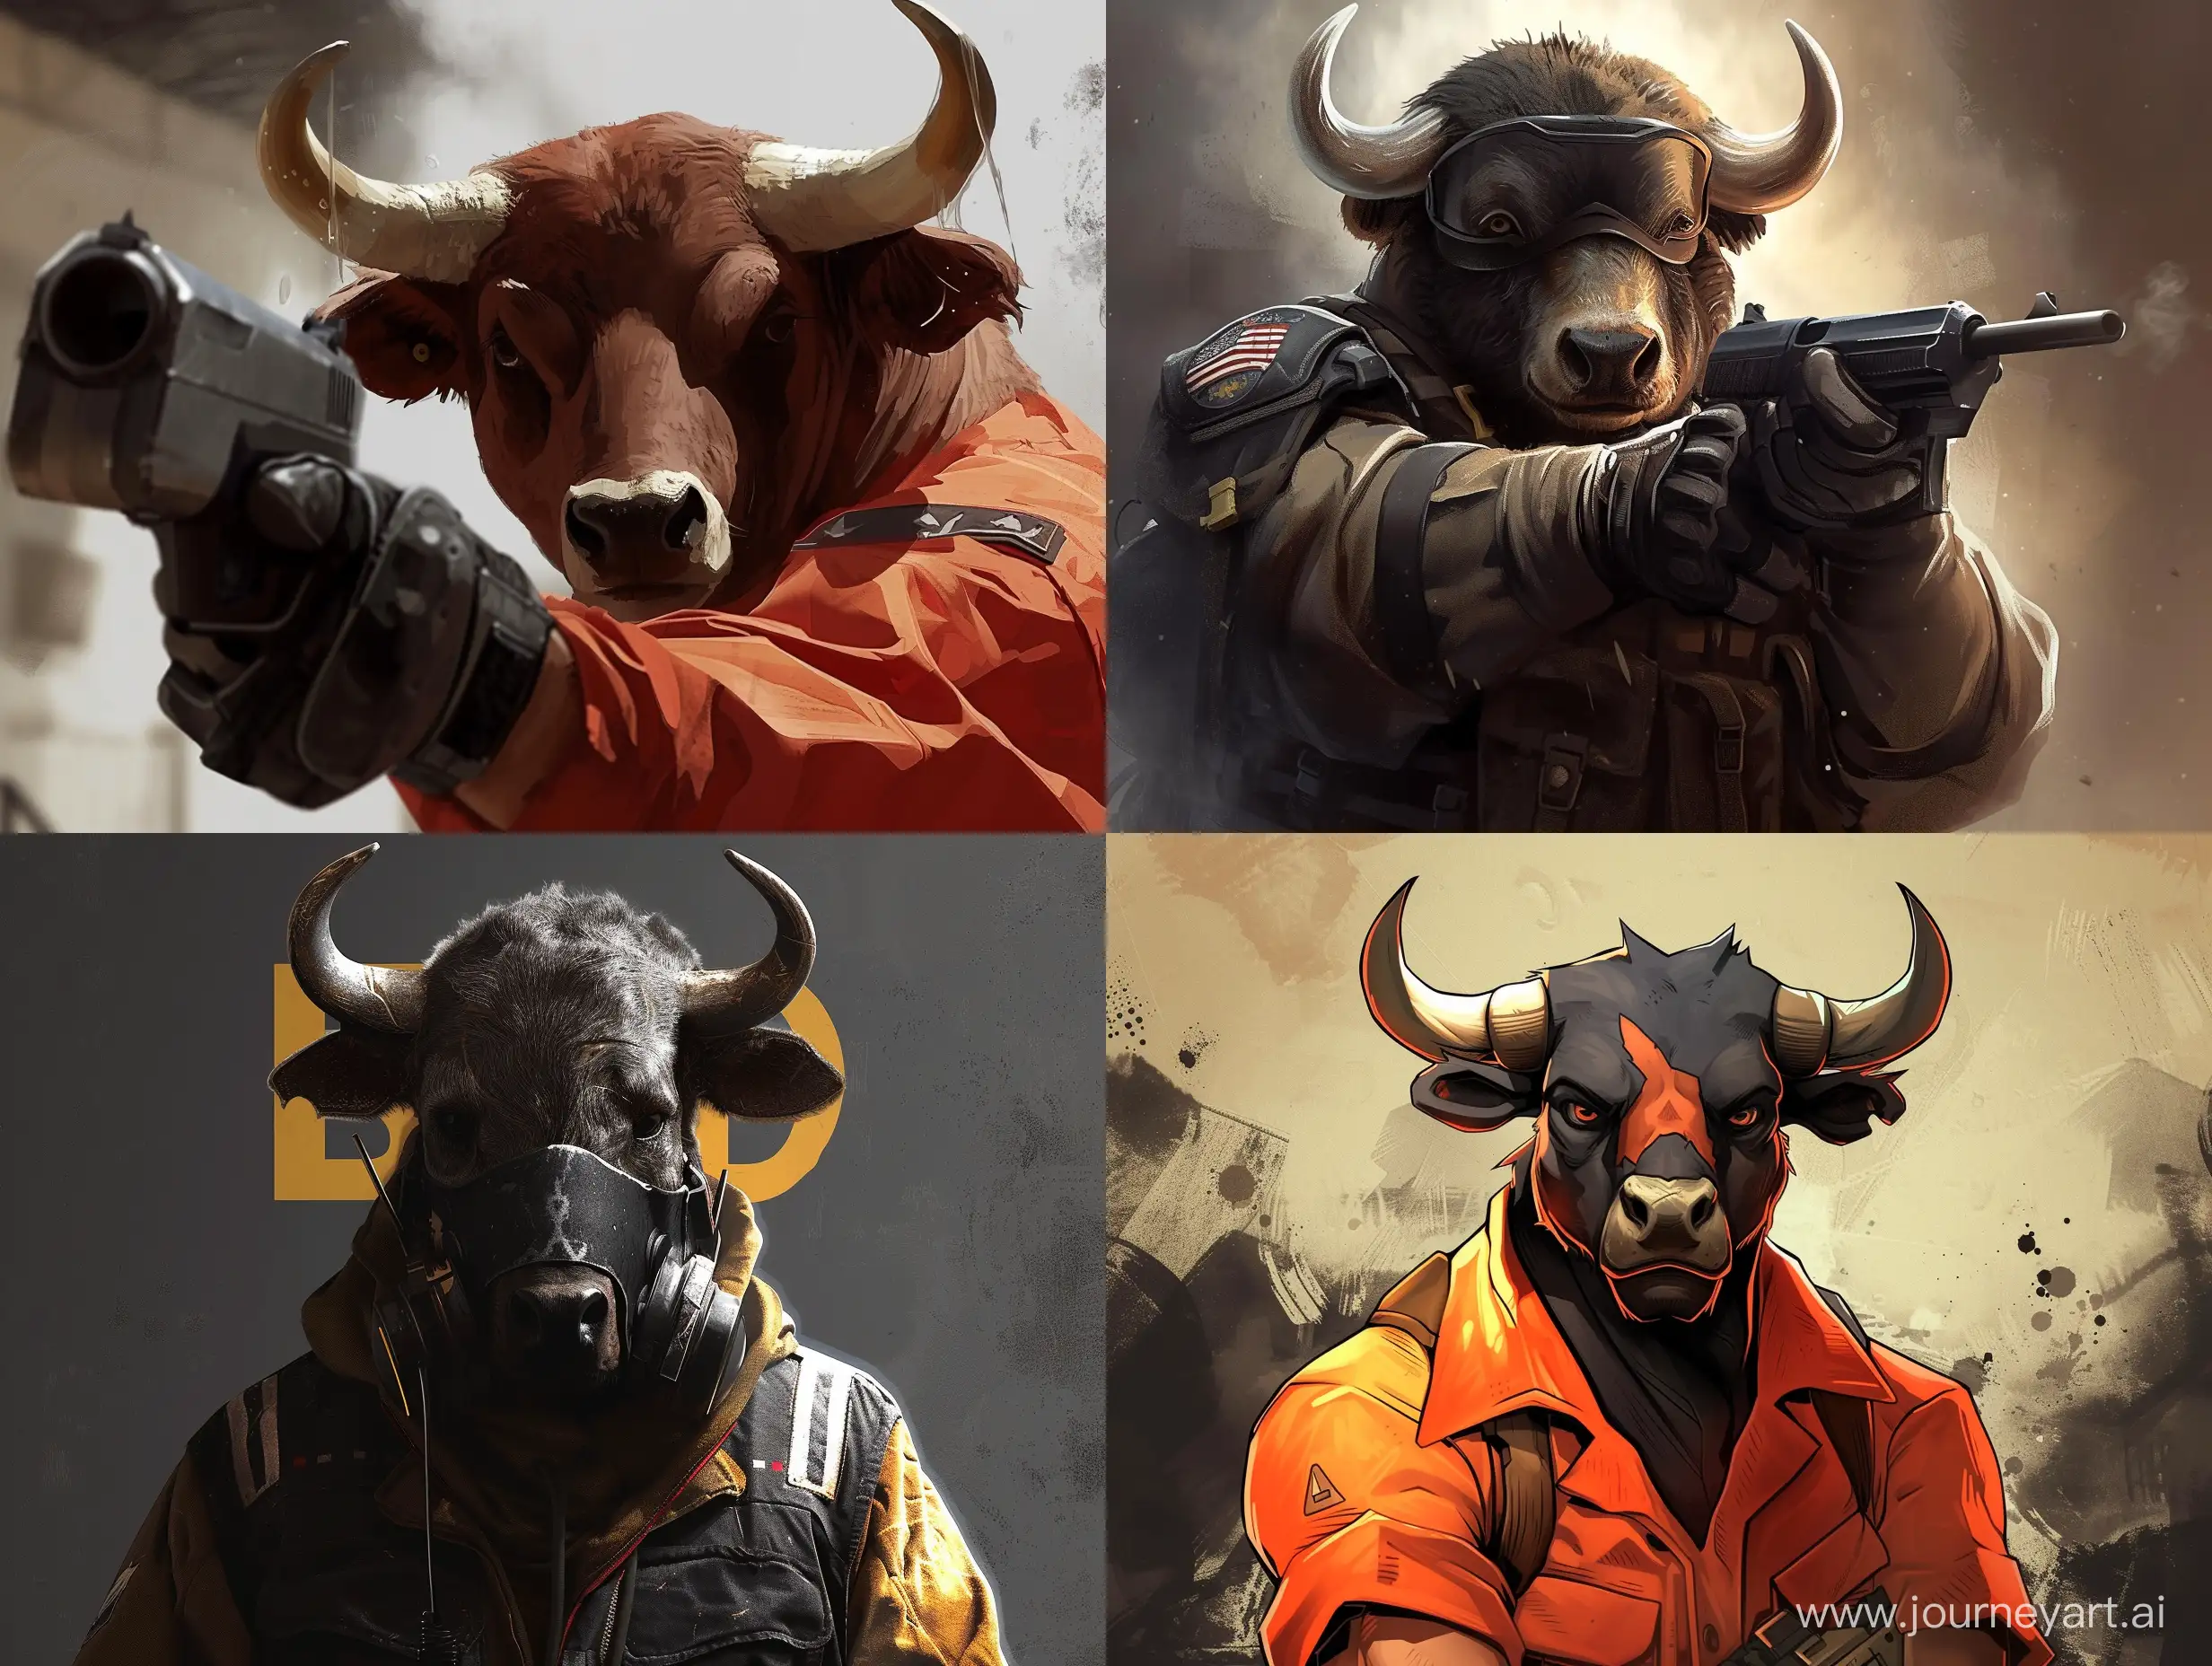 Make avatar "Bull Public" for the Counter-strike game server